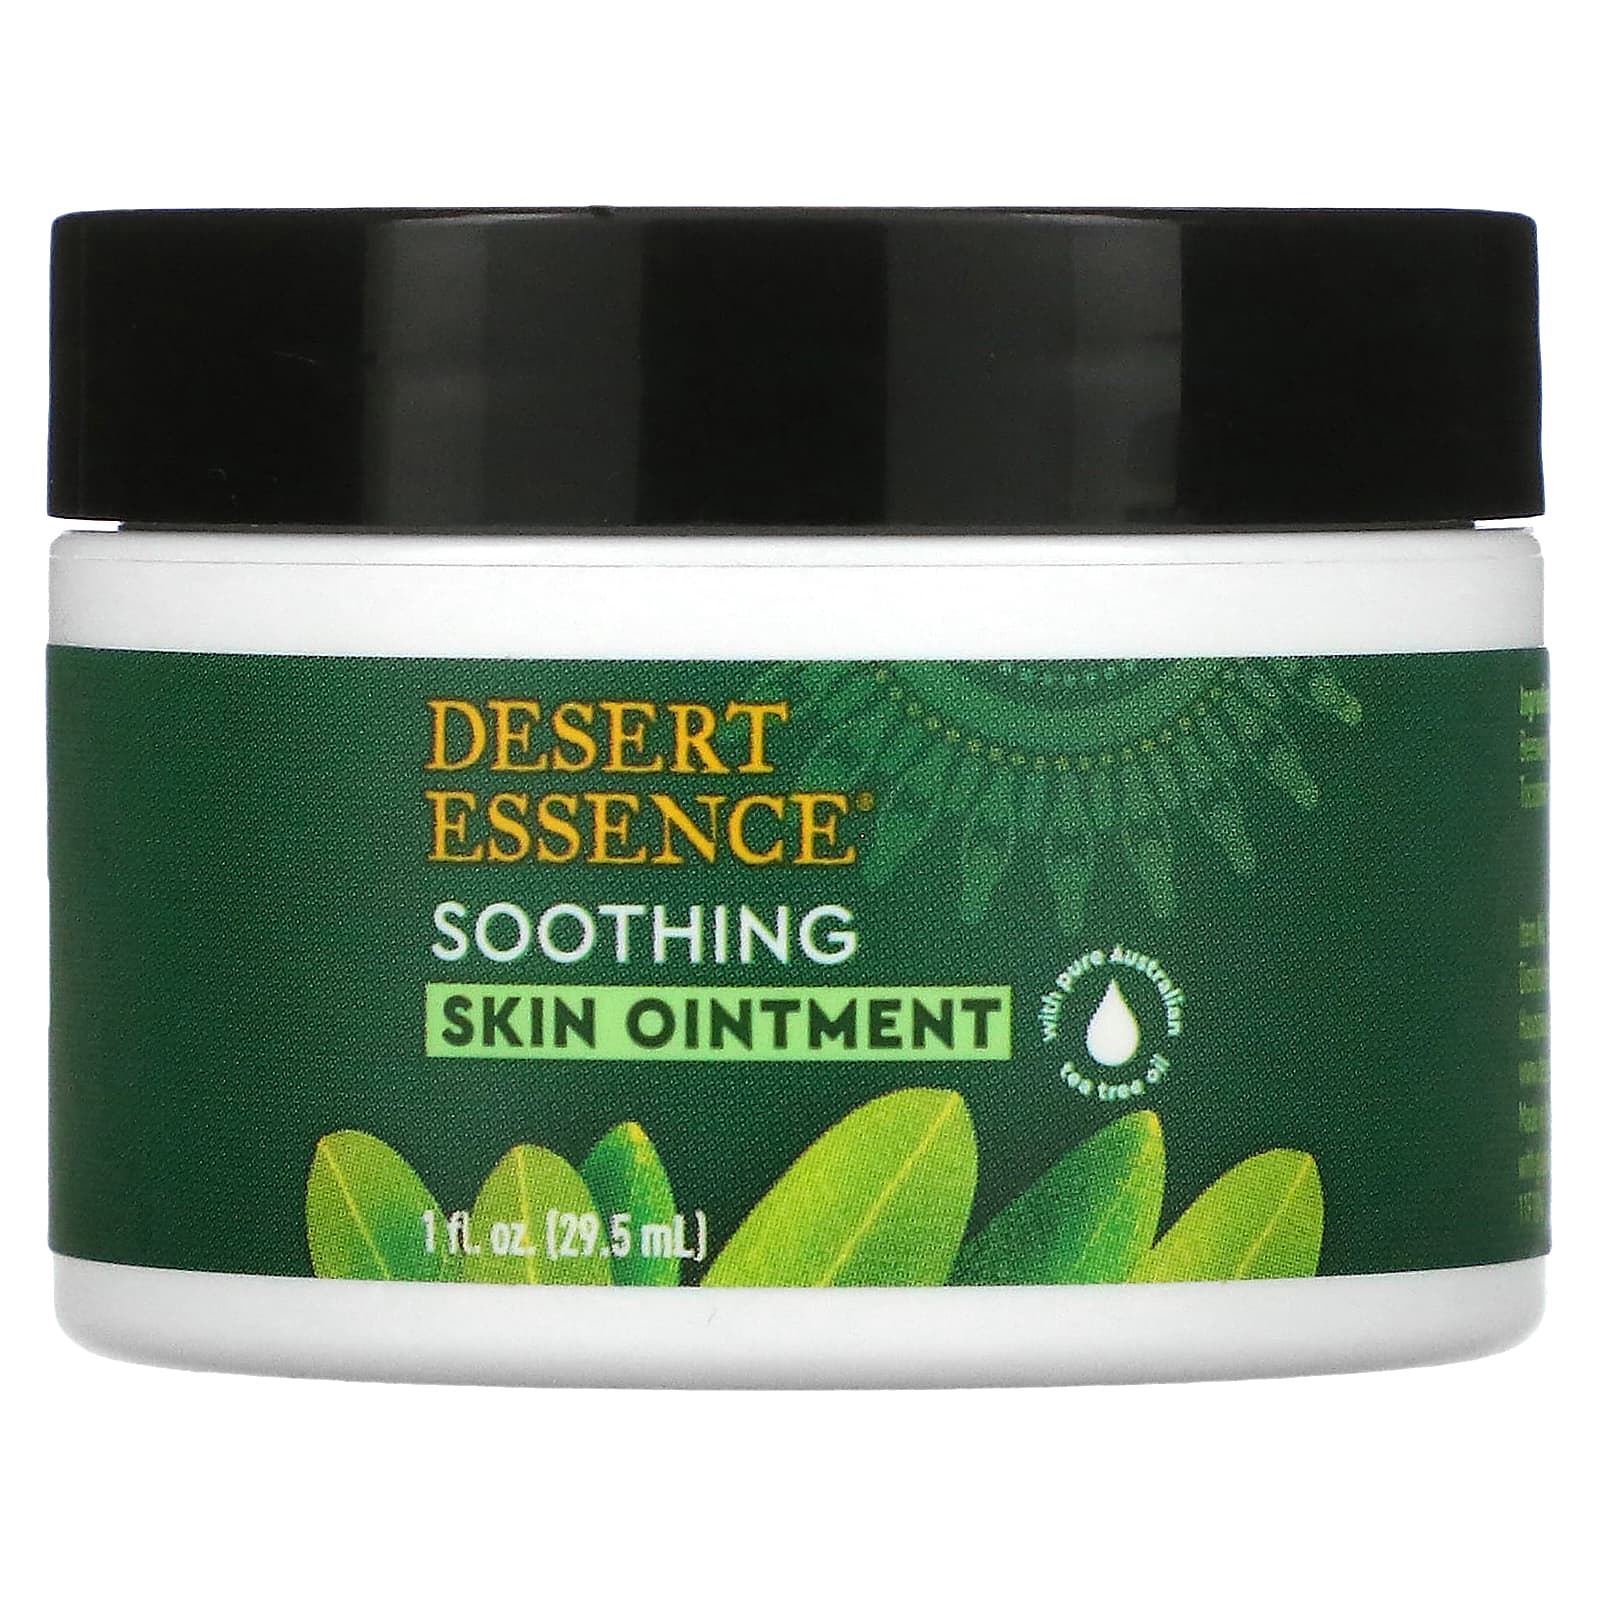 Desert Essence Мазь для кожи с маслом чайного дерева 1 жидкая унция (29.5 мл) цена и фото